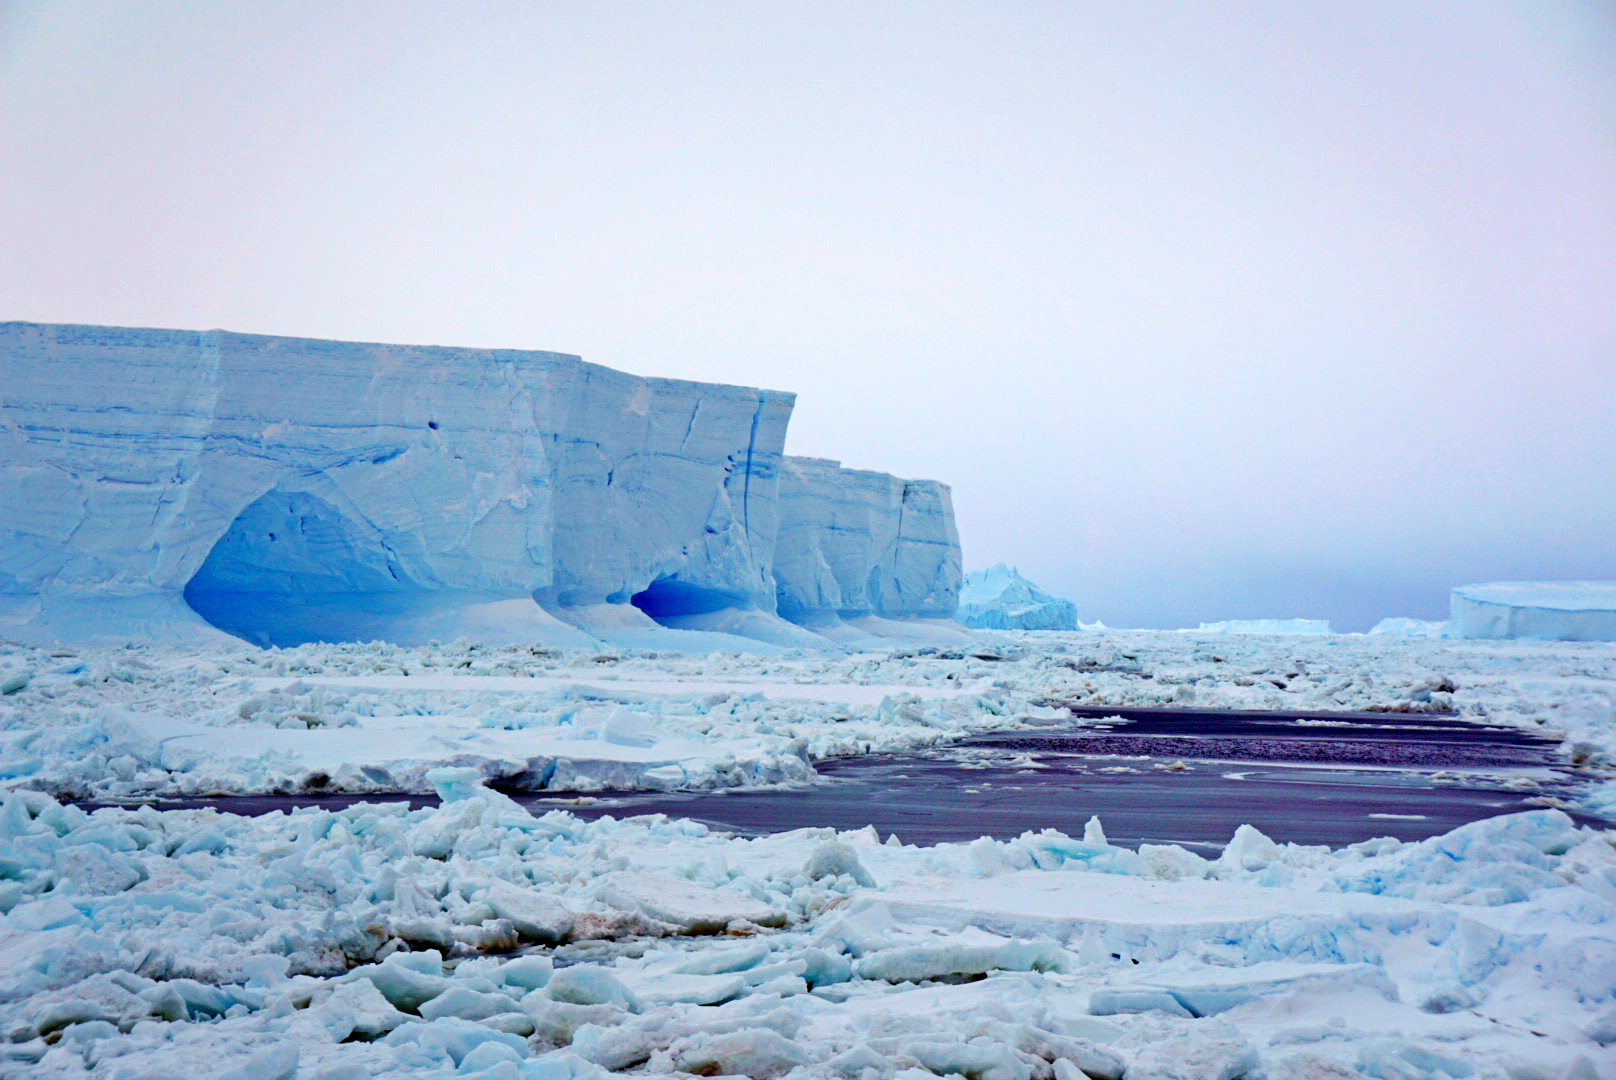 Айсберг в Южном океане, вблизи станции Новолазаревская